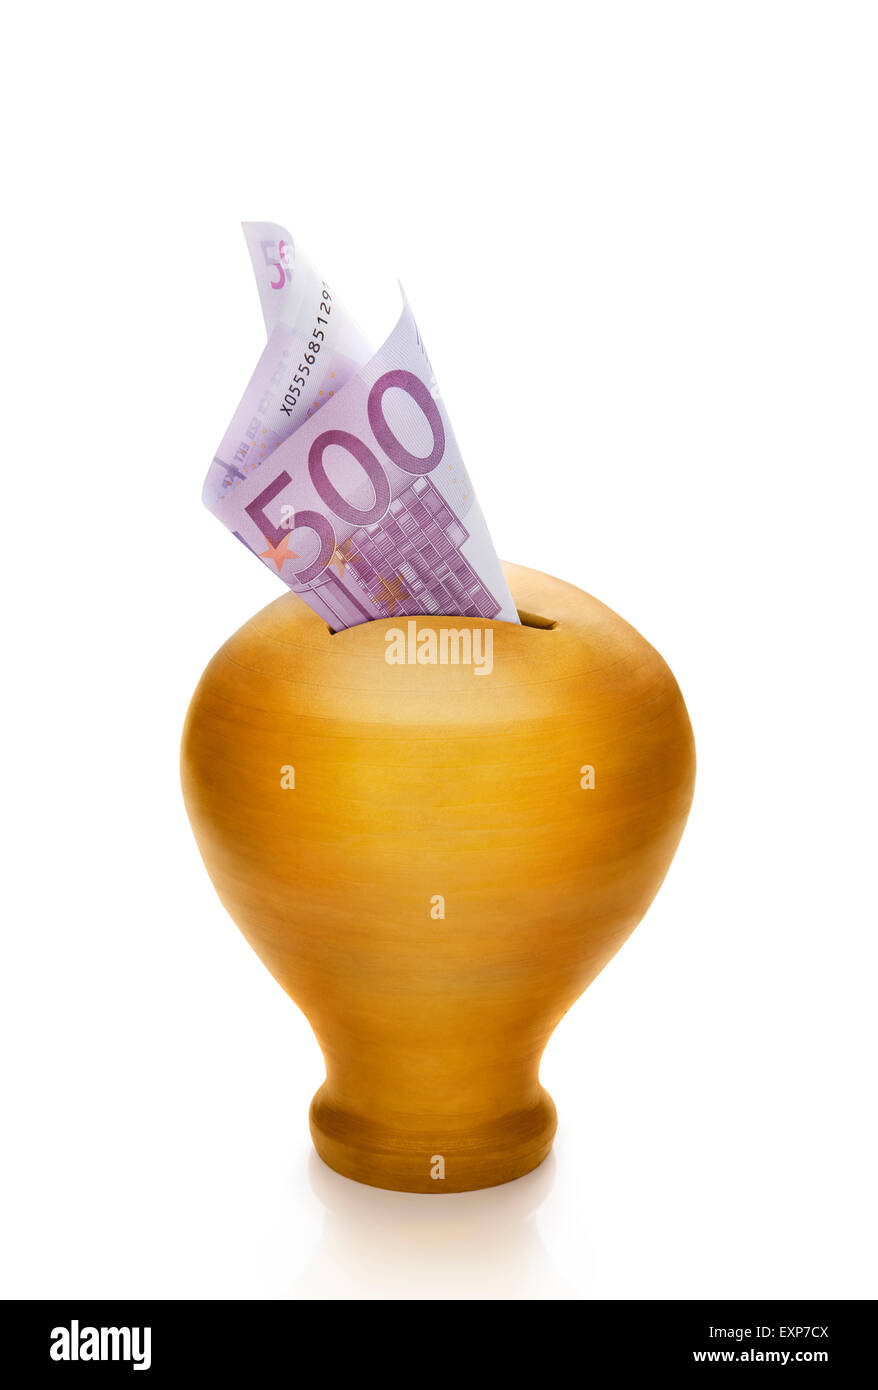 500 euros into a golden money box. Stock Photo